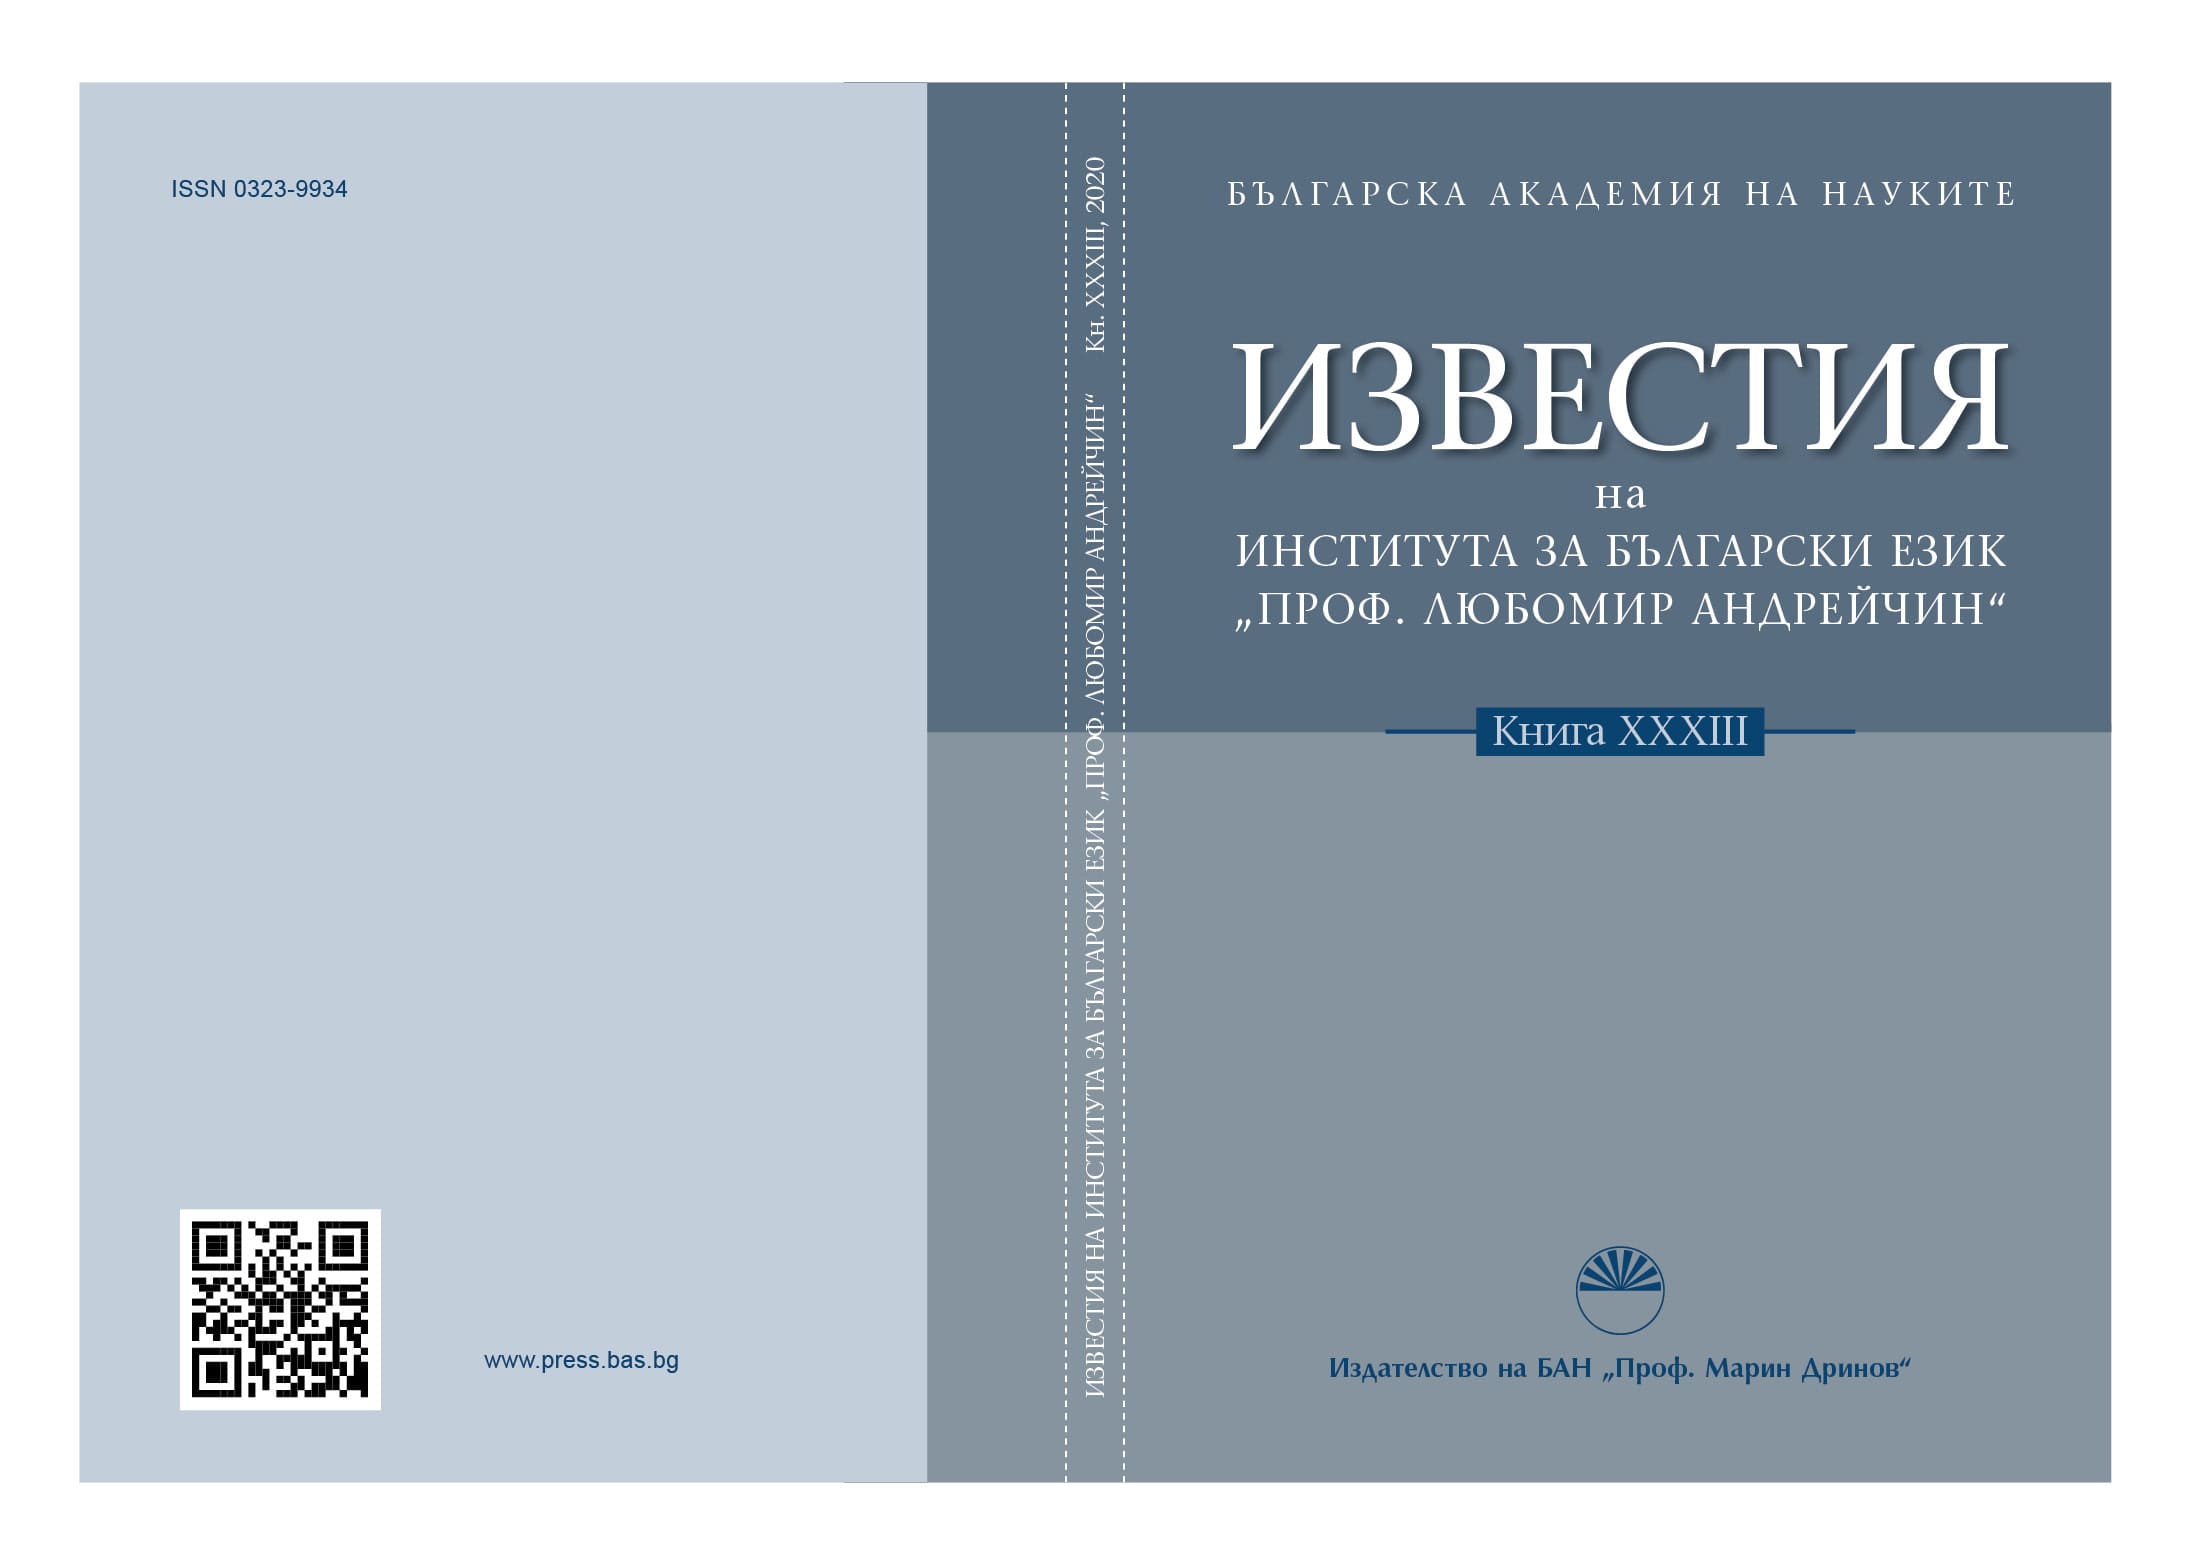 Quo vadis, българистични изследвания: проф. Махиел Кийл за България и българите. Част II